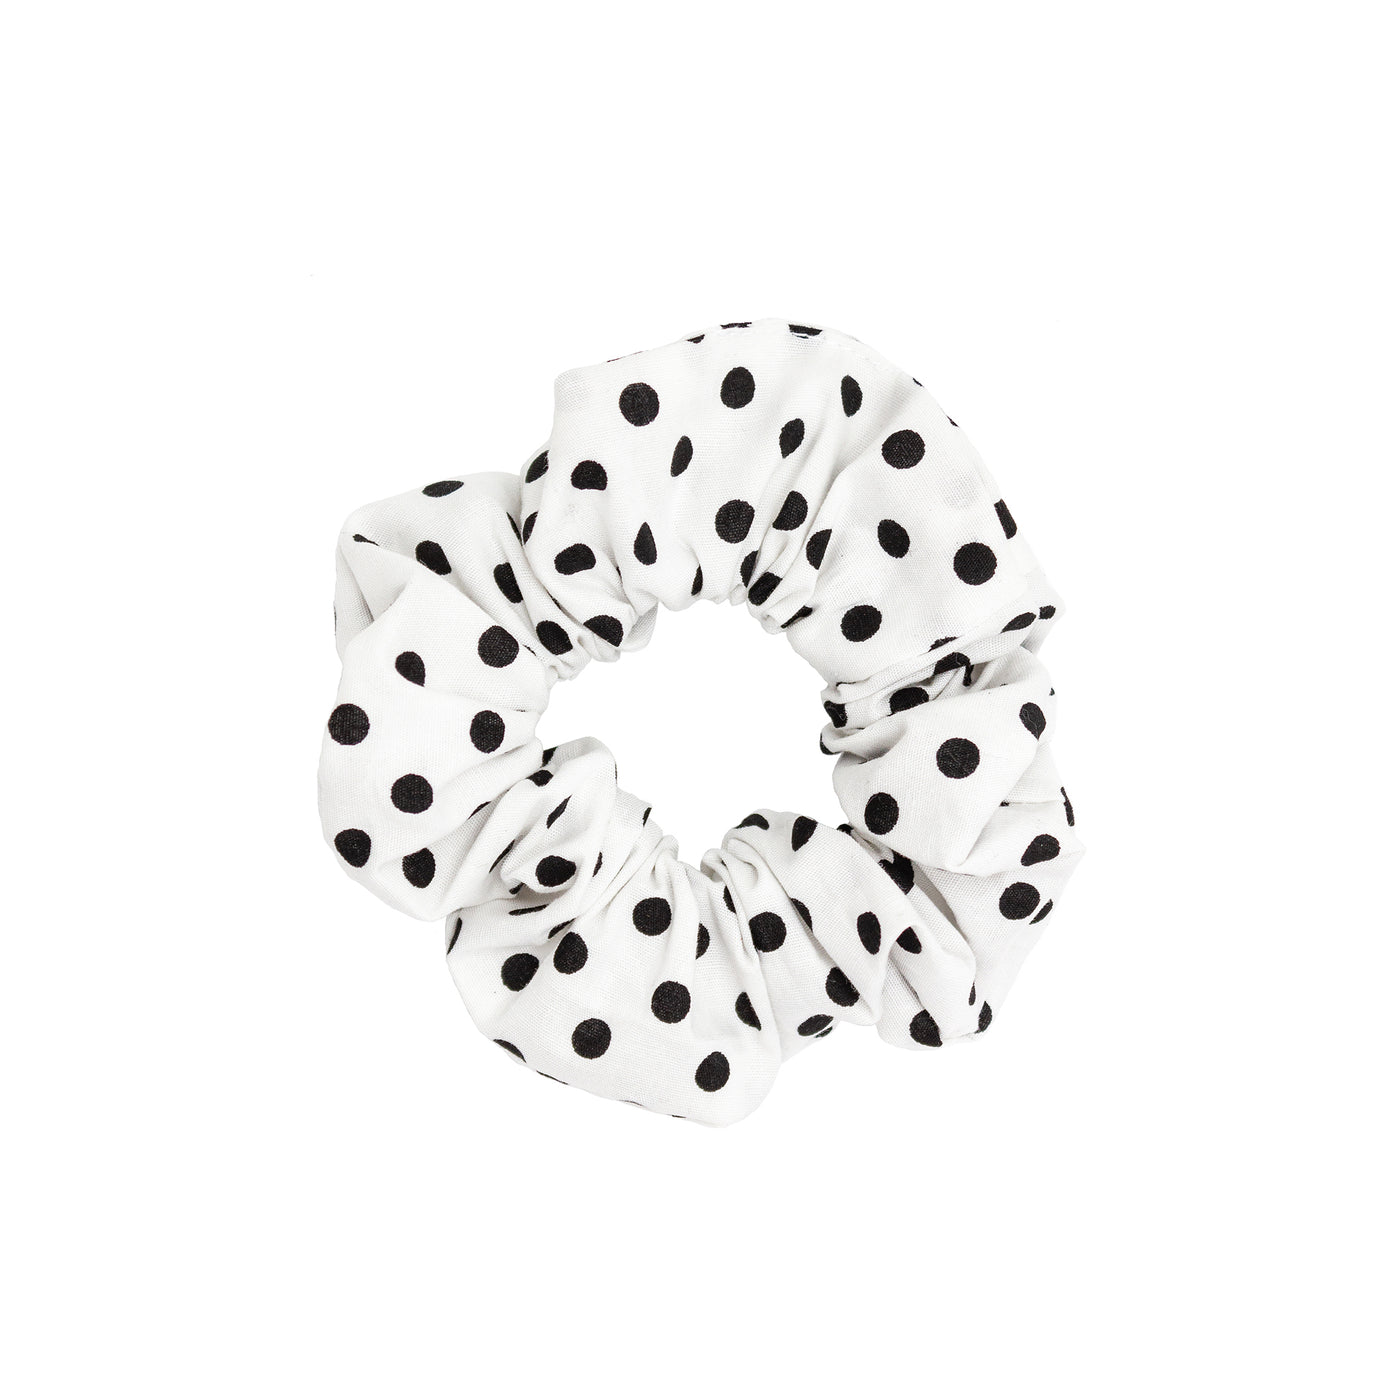 Picnic Scrunchie in Black & White Polka Dot